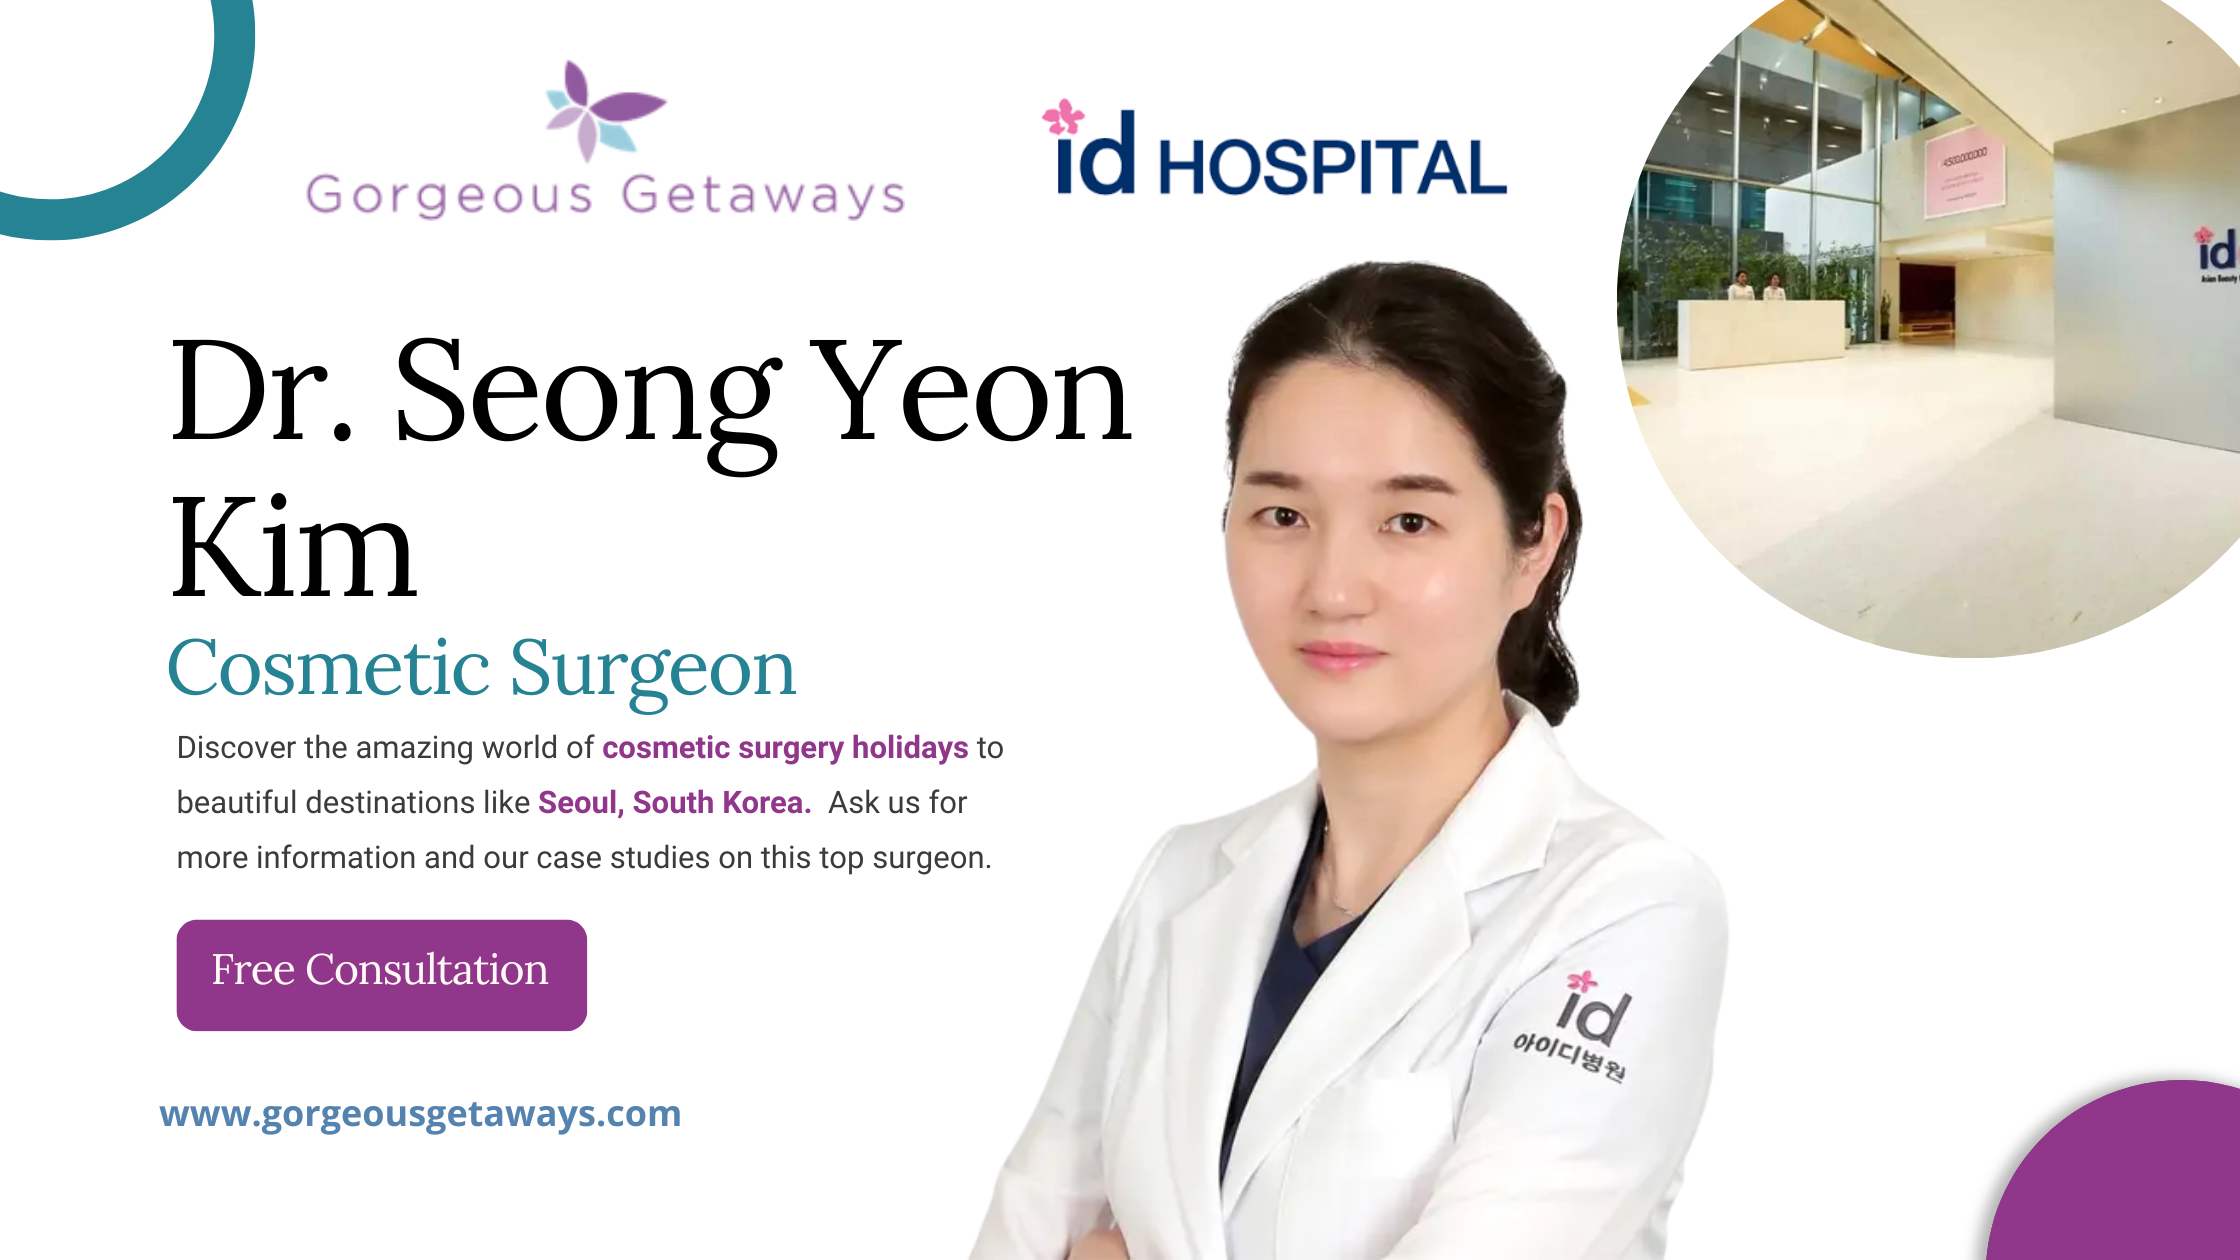 Dr. Seong Yeon Kim